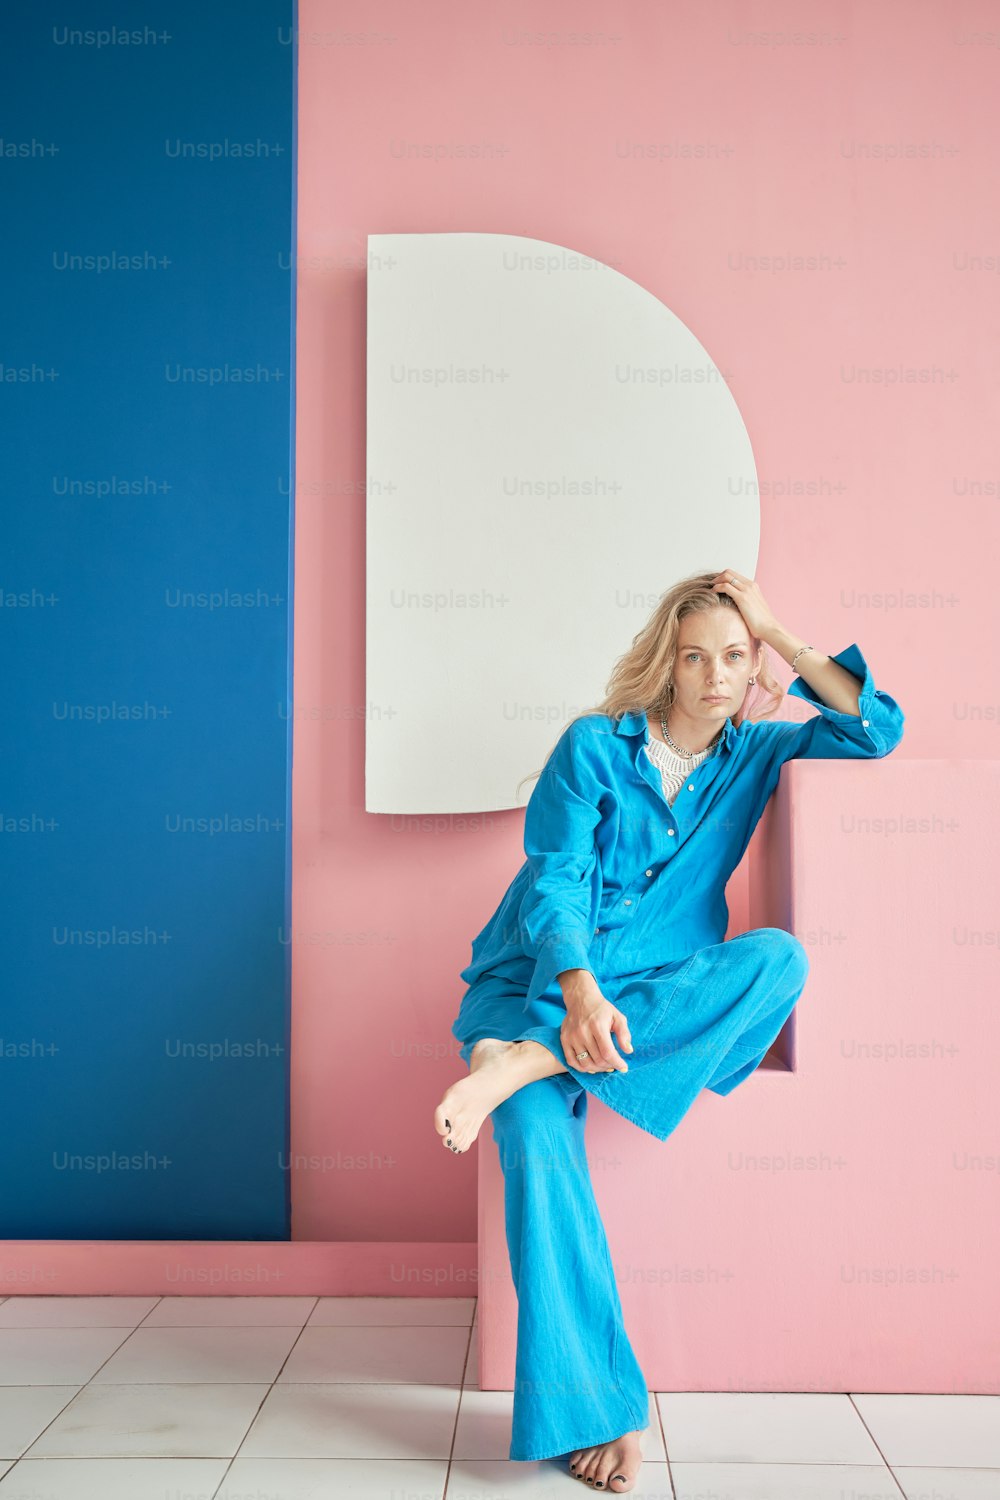 파란색 점프수트를 입은 여자가 분홍색과 파란색 벽에 앉아 있다